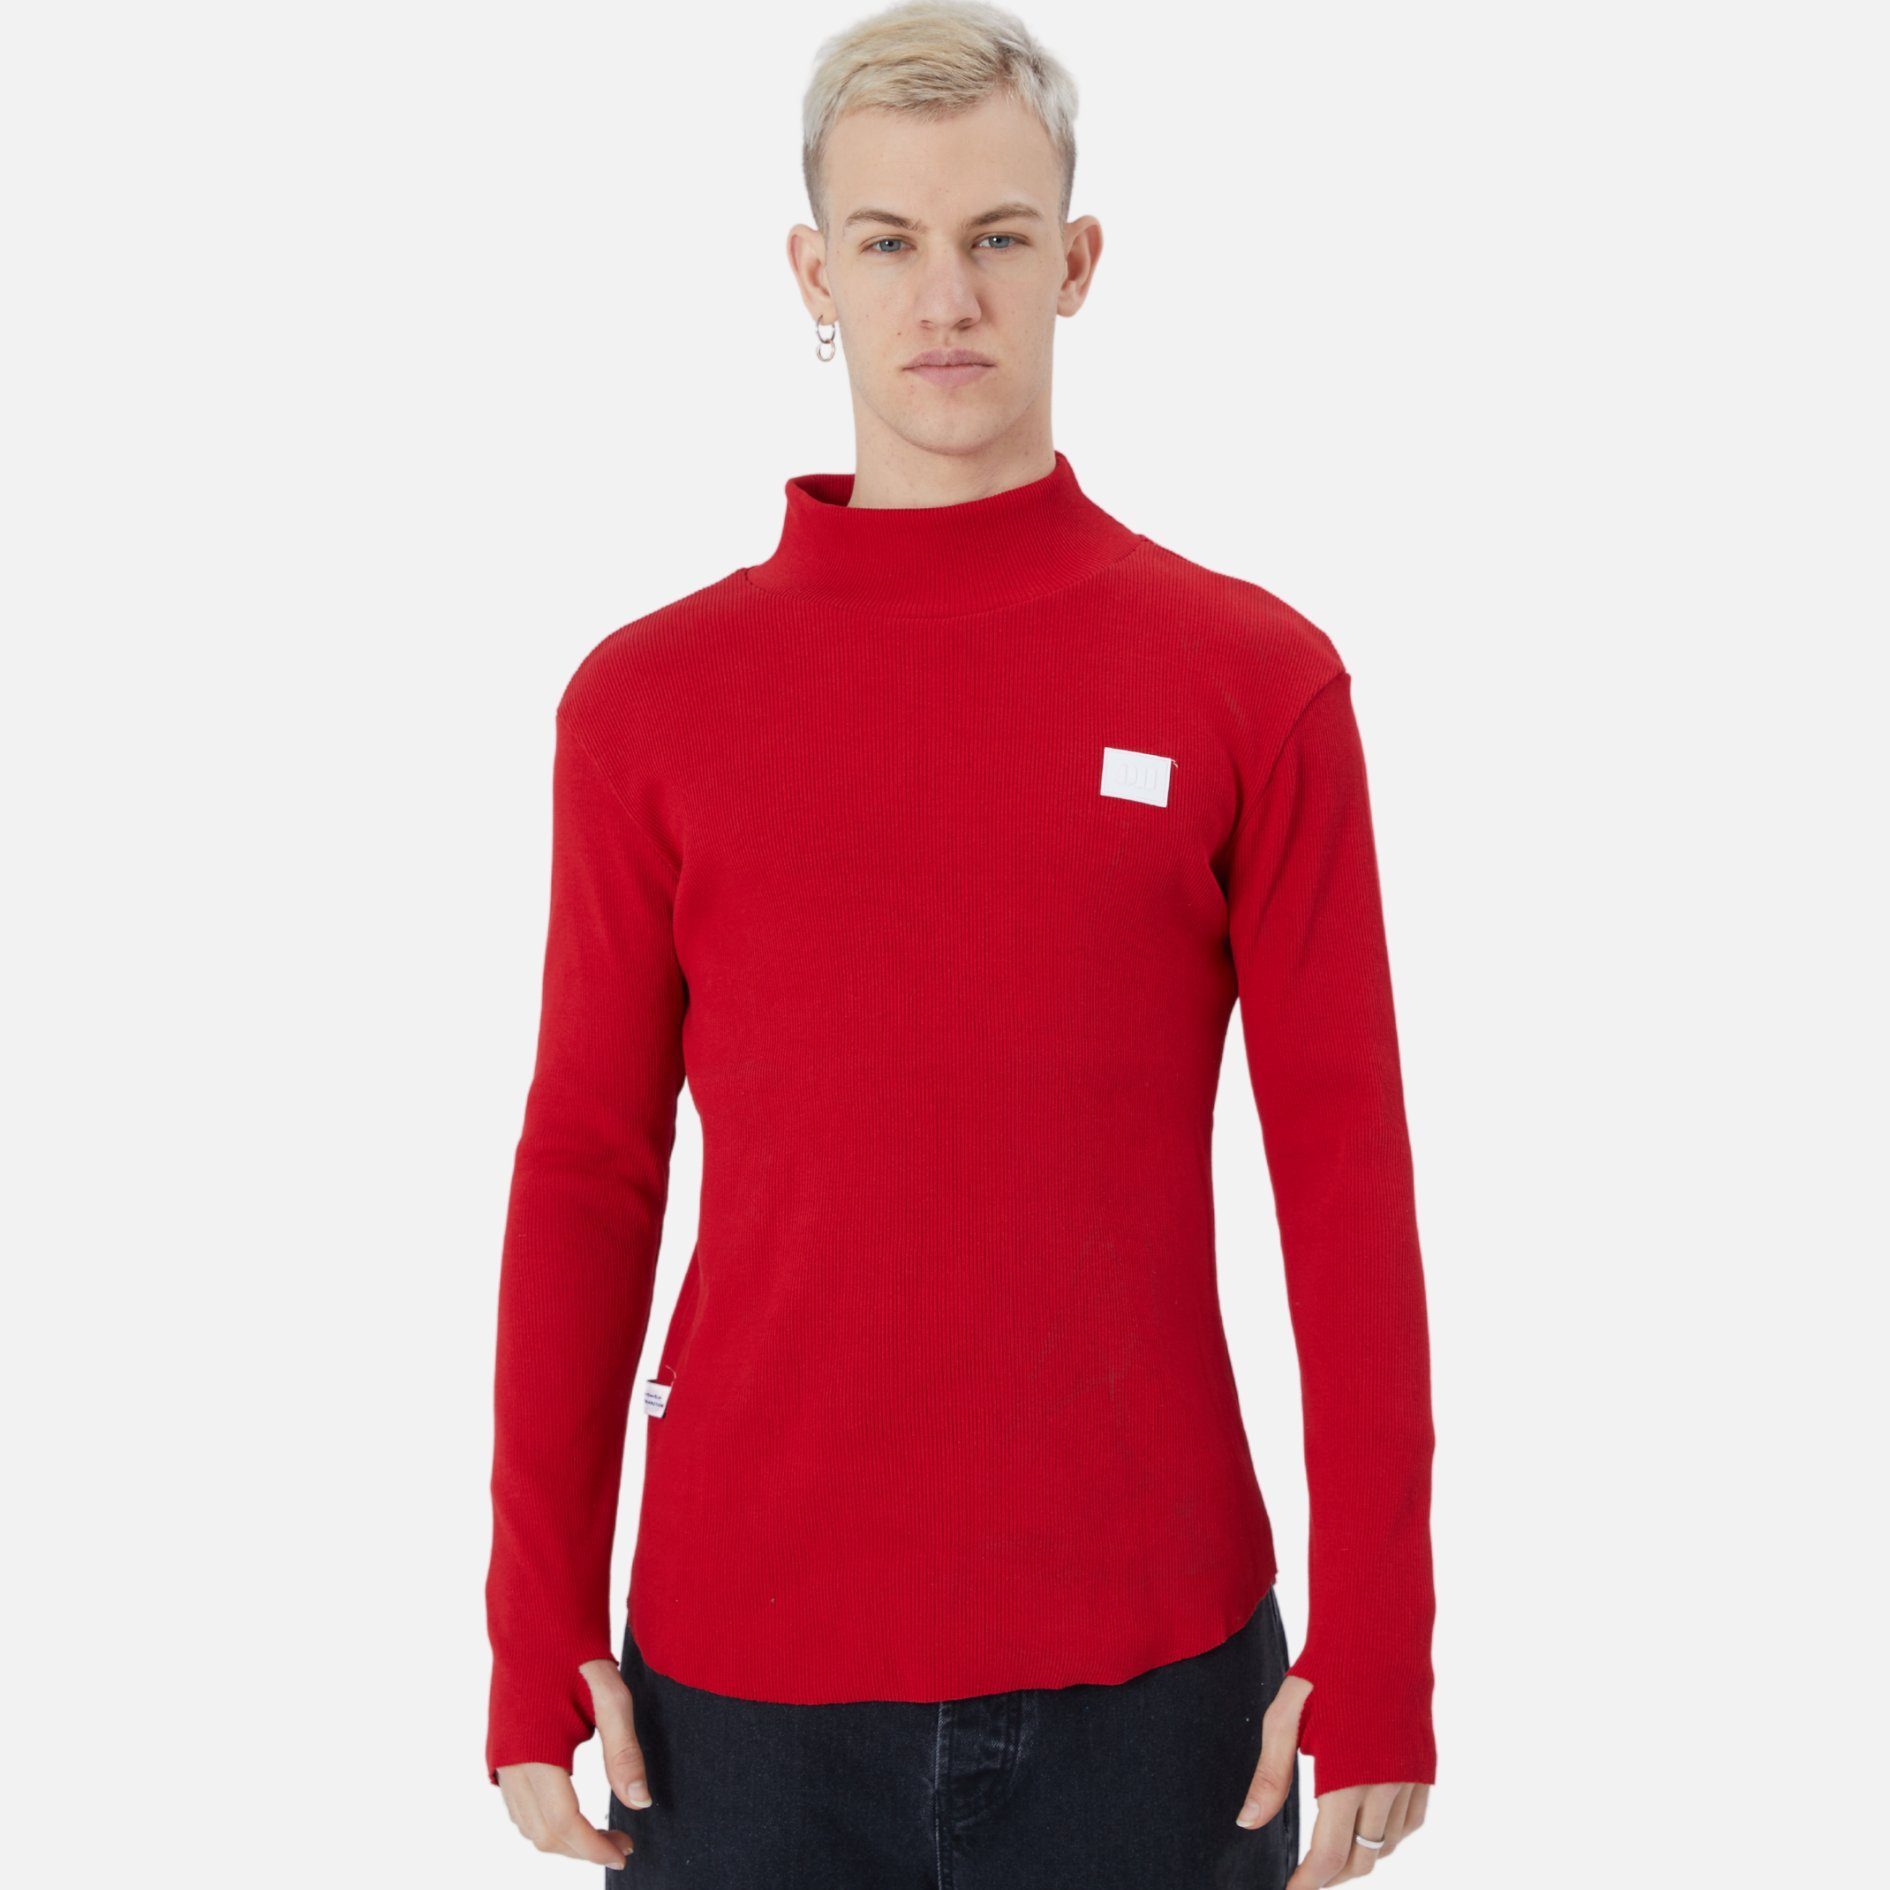 Rundhals Casuals Sweatshirt COFI Rot Regular Sweatshirt Fit Pullover Herren